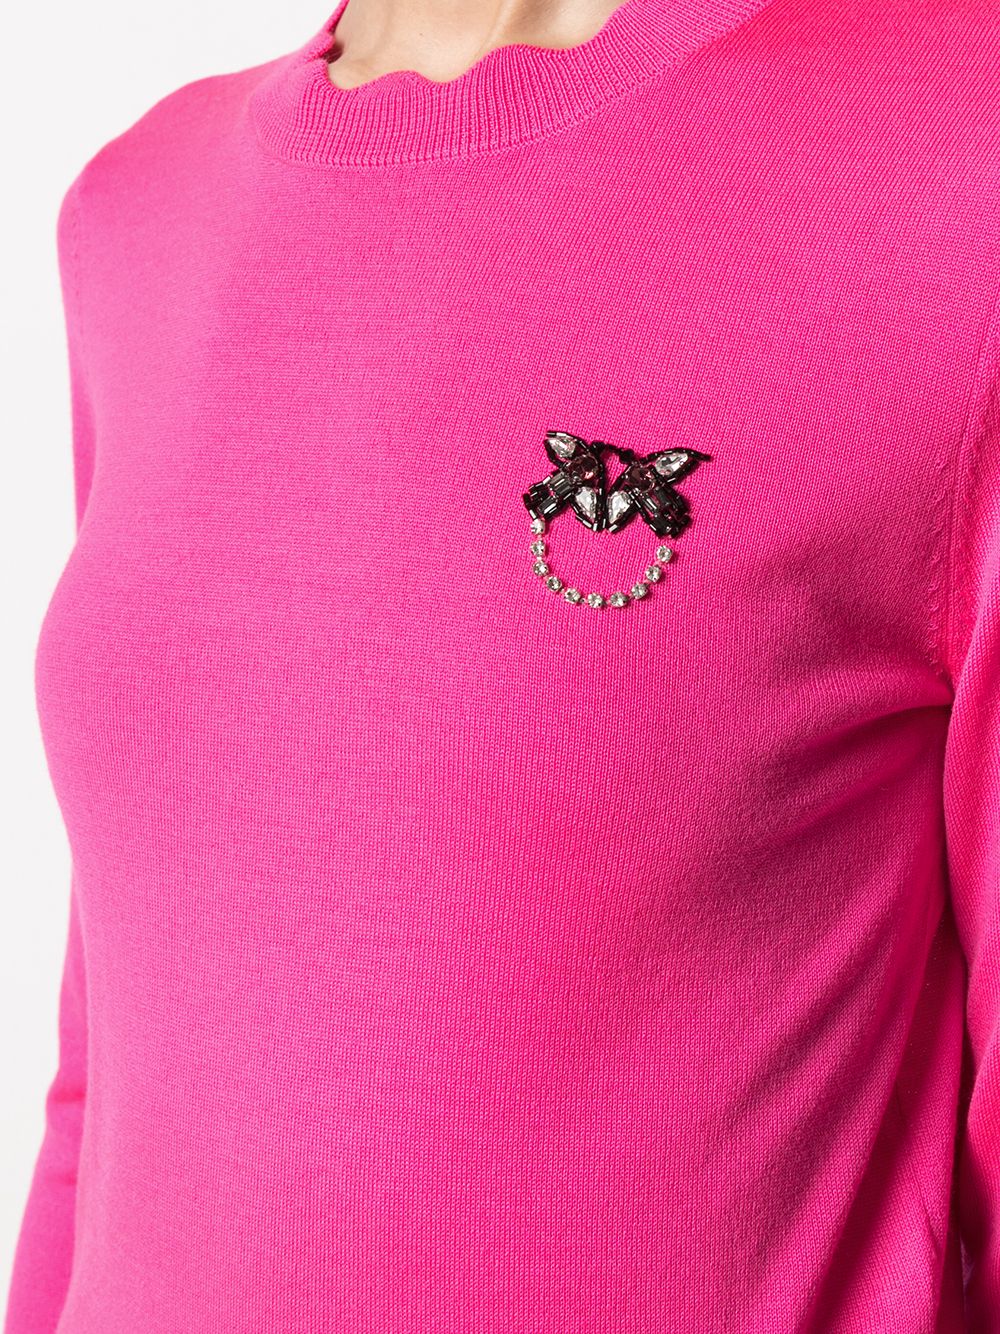 фото Pinko пуловер со стразами